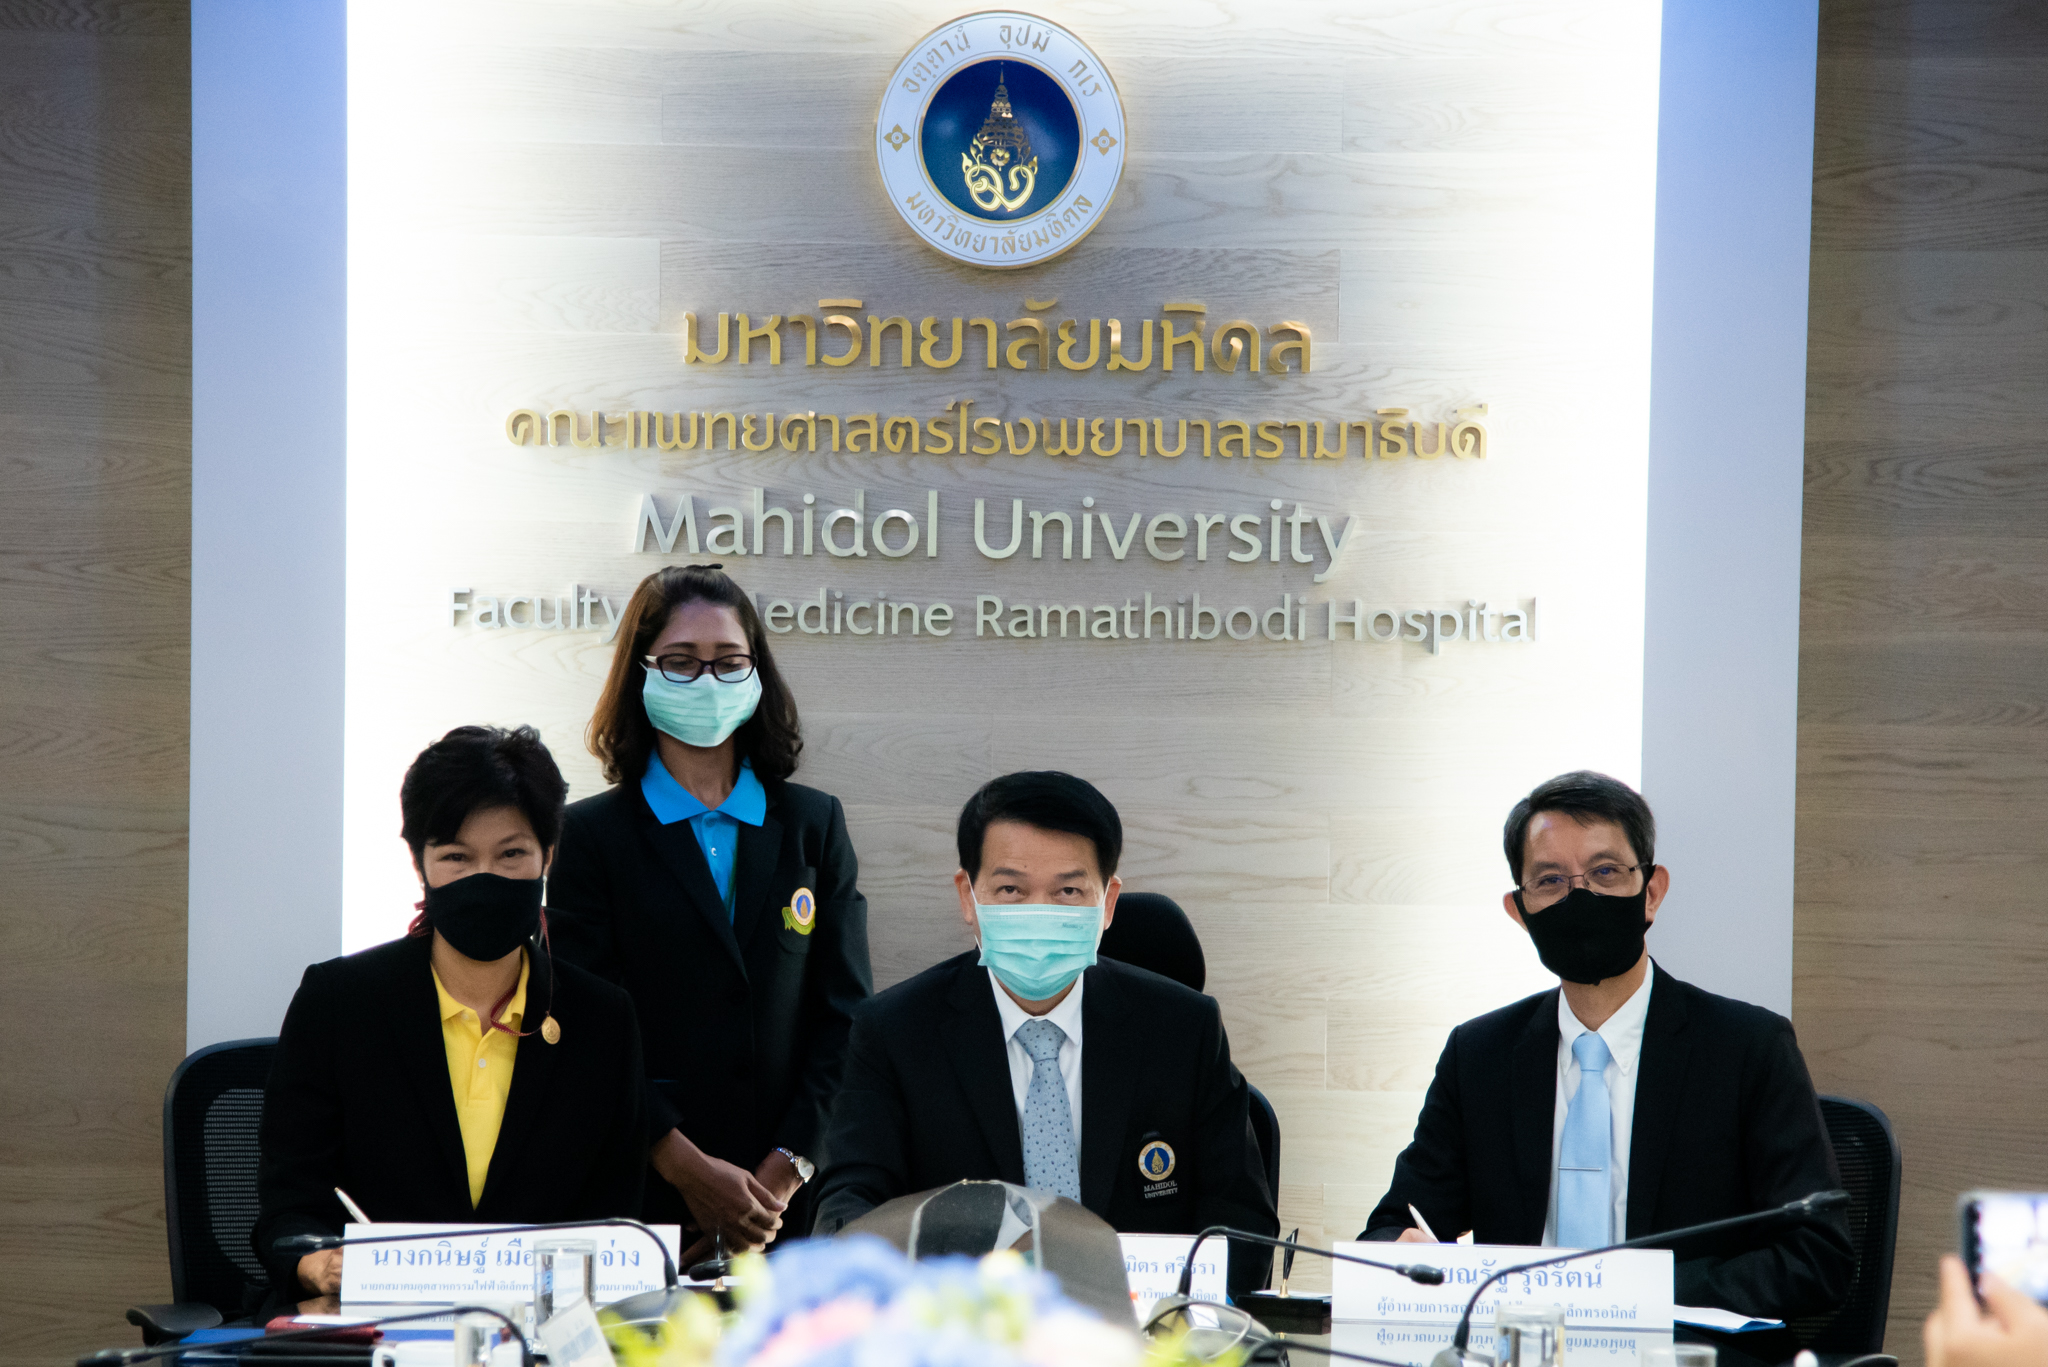 พิธีลงนามบันทึกข้อตกลงความร่วมมือ (MOU) เพื่อสนับสนุนและพัฒนานวัตกรรมทางการแพทย์ของไทยสู่อุตสาหกรรมเครื่องมือแพทย์ ระหว่าง คณะแพทยศาสตร์โรงพยาบาลรามาธิบดี มหาวิทยาลัยมหิดล กับสมาคมอุตสาหกรรมไฟฟ้าอิเล็กทรอนิกส์และโทรคมนาคมไทย และสถาบันไฟฟ้าและอิเล็กทรอนิกส์